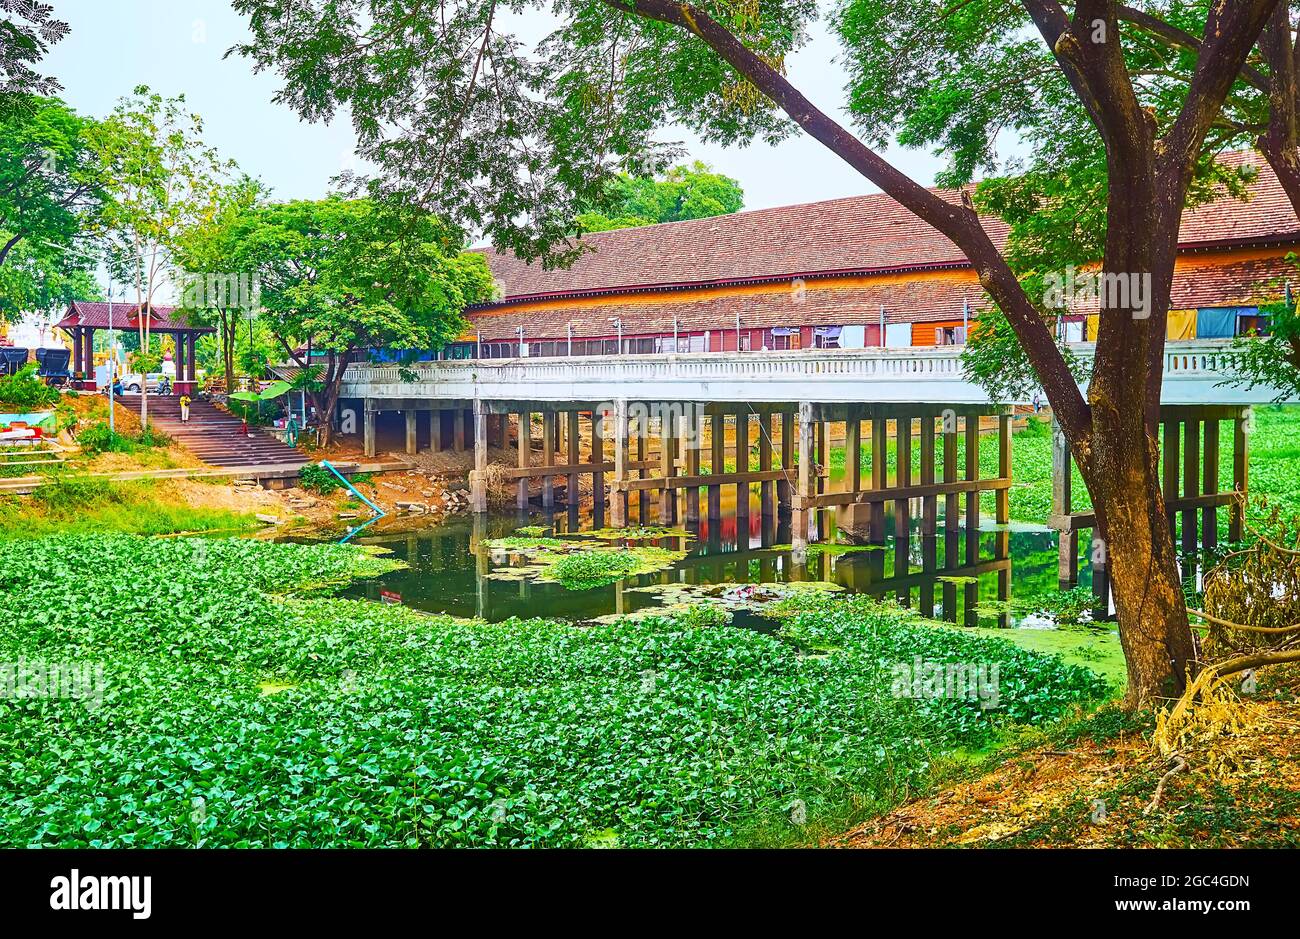 Vue sur le pont commercial Kua Mung Tha Sing traversant la rivière Kuang, recouvert de plantes vertes de jacinthe d'eau, Lamphun, Thaïlande Banque D'Images